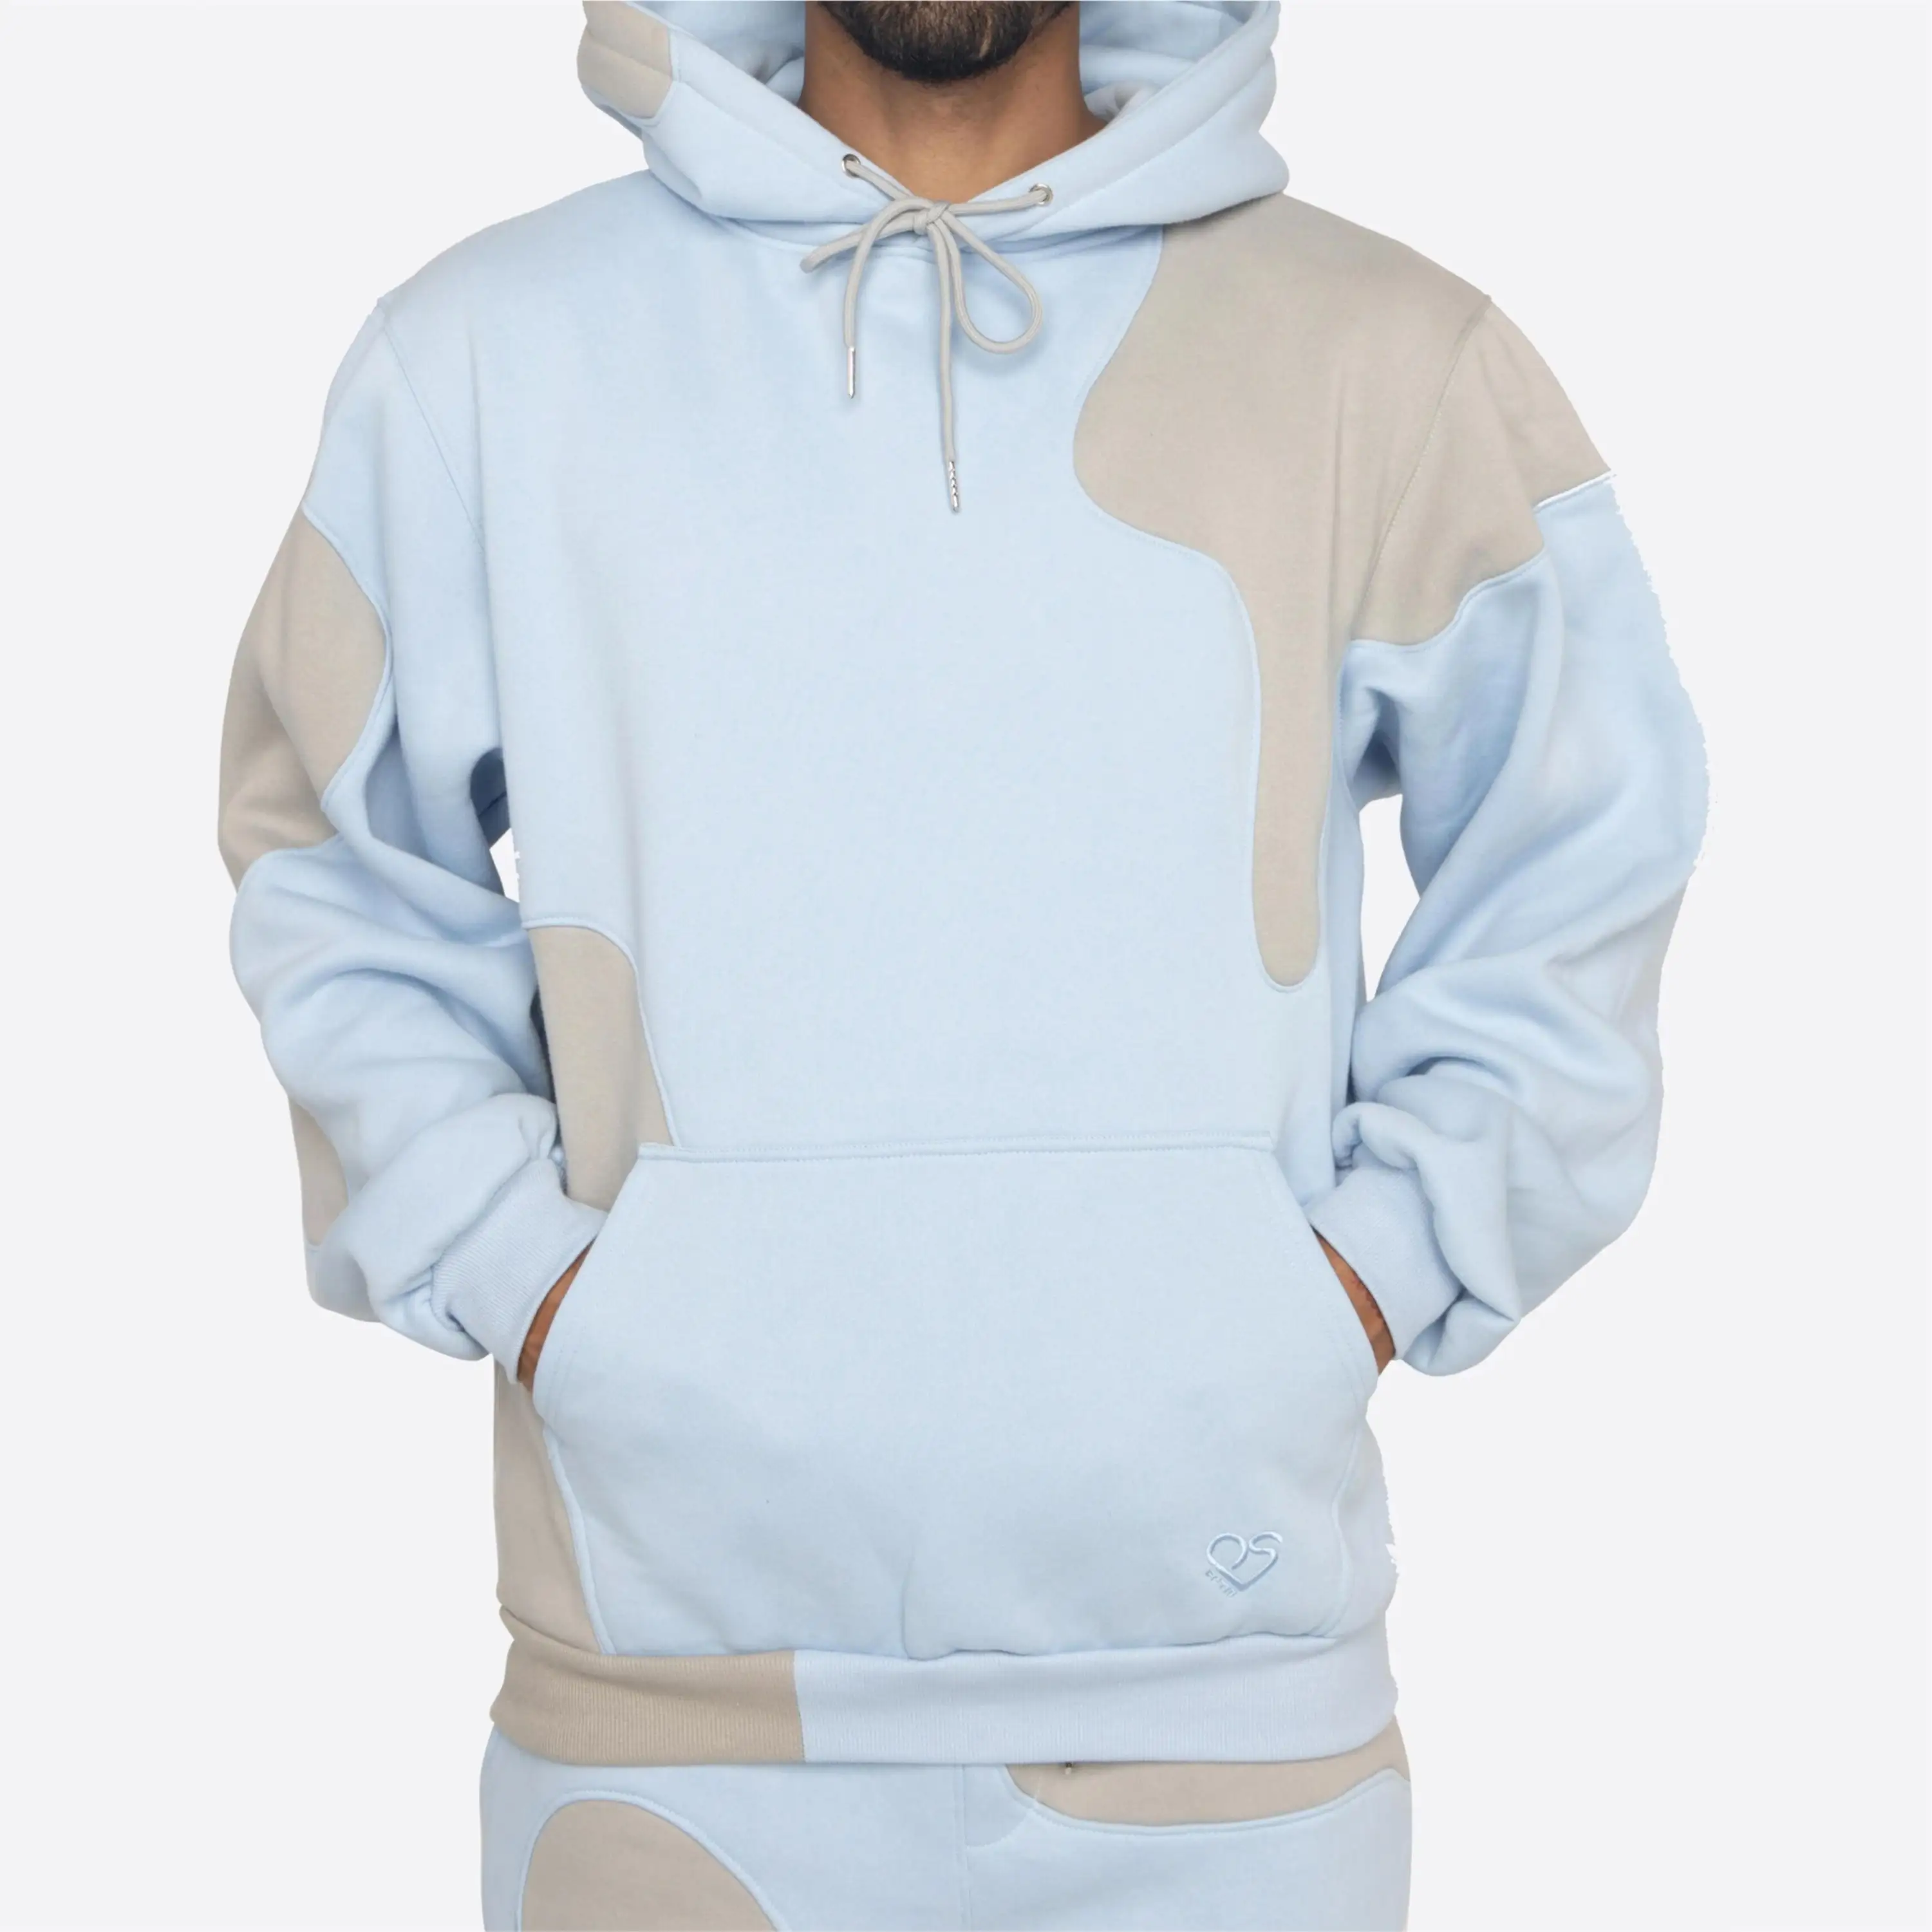 100% pamuk 320gsm unisex hoodies yüksek kalite en çok satan paneli hoodies Pakistan yapılan sıcak kış giysilerin unisex hoodies